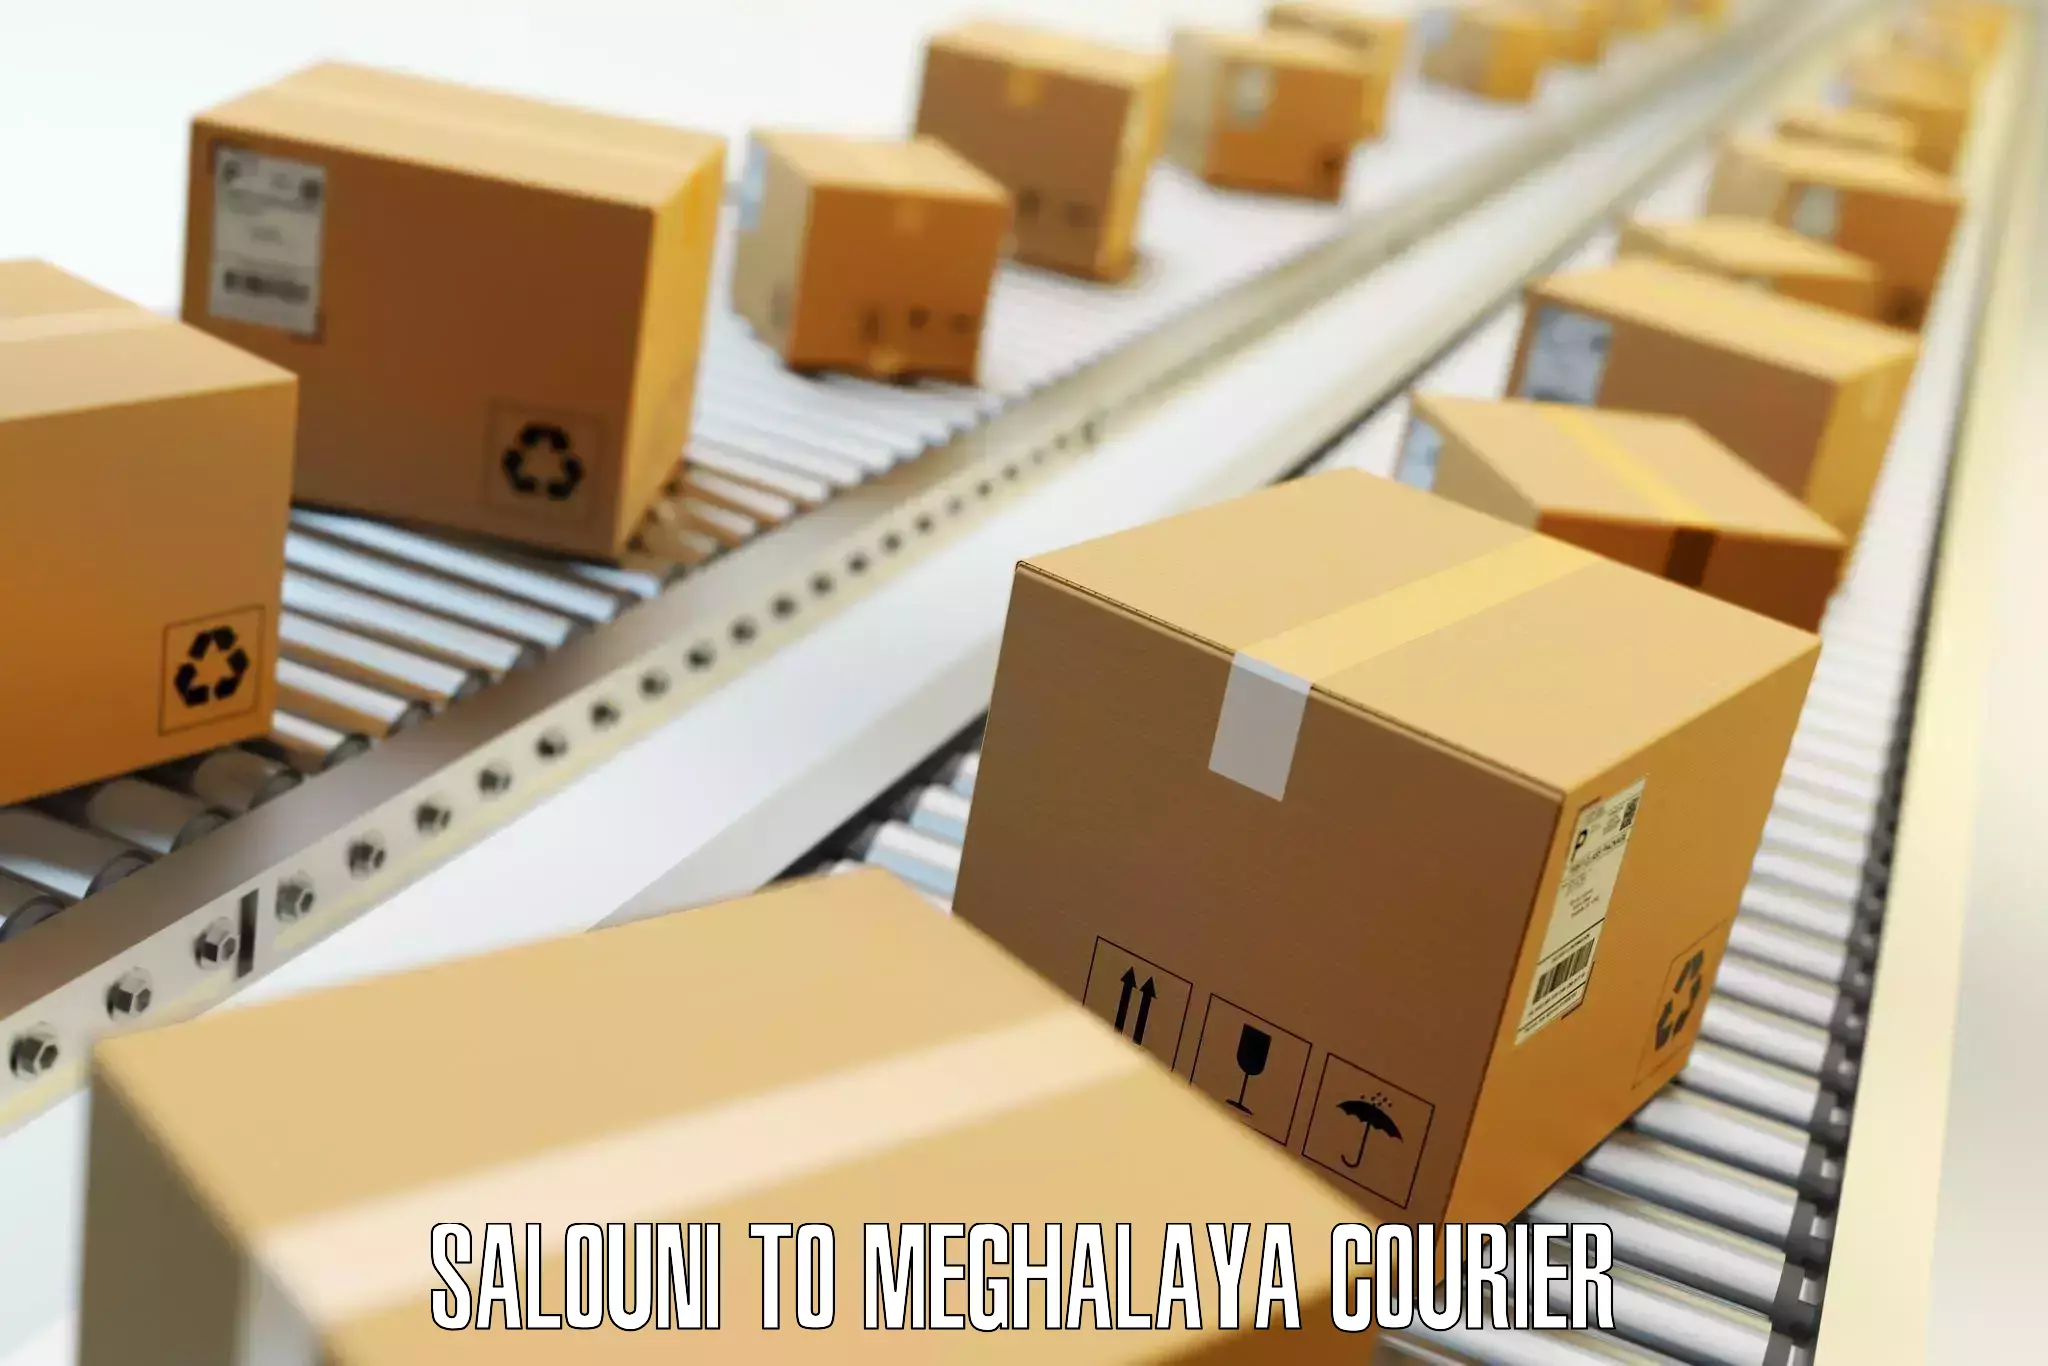 Luggage delivery estimate Salouni to Meghalaya